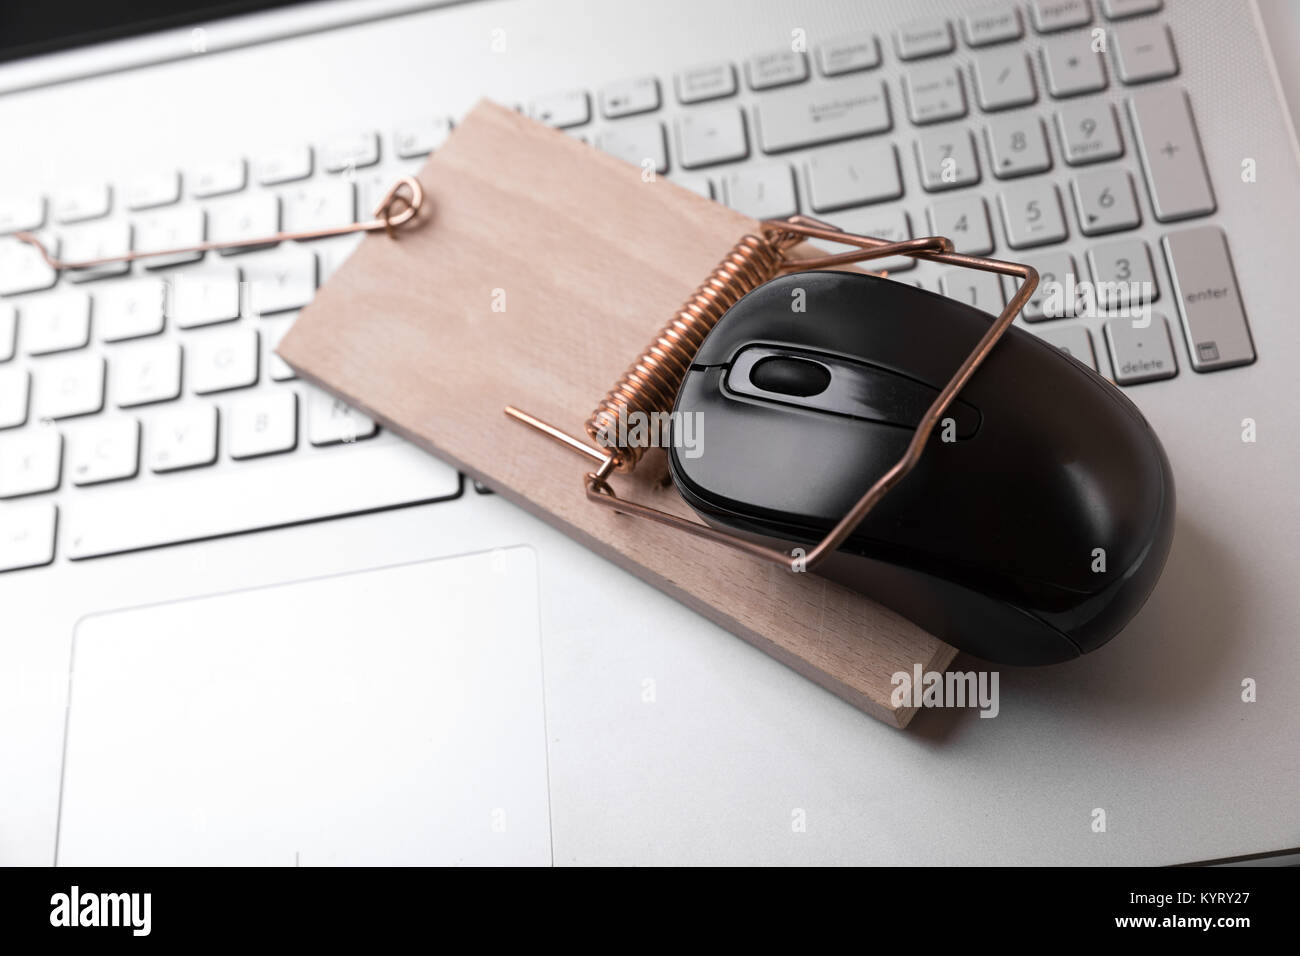 Maus Mausefalle auf Laptop Tastatur - zensiert Internet und Kriminalität Konzept Stockfoto